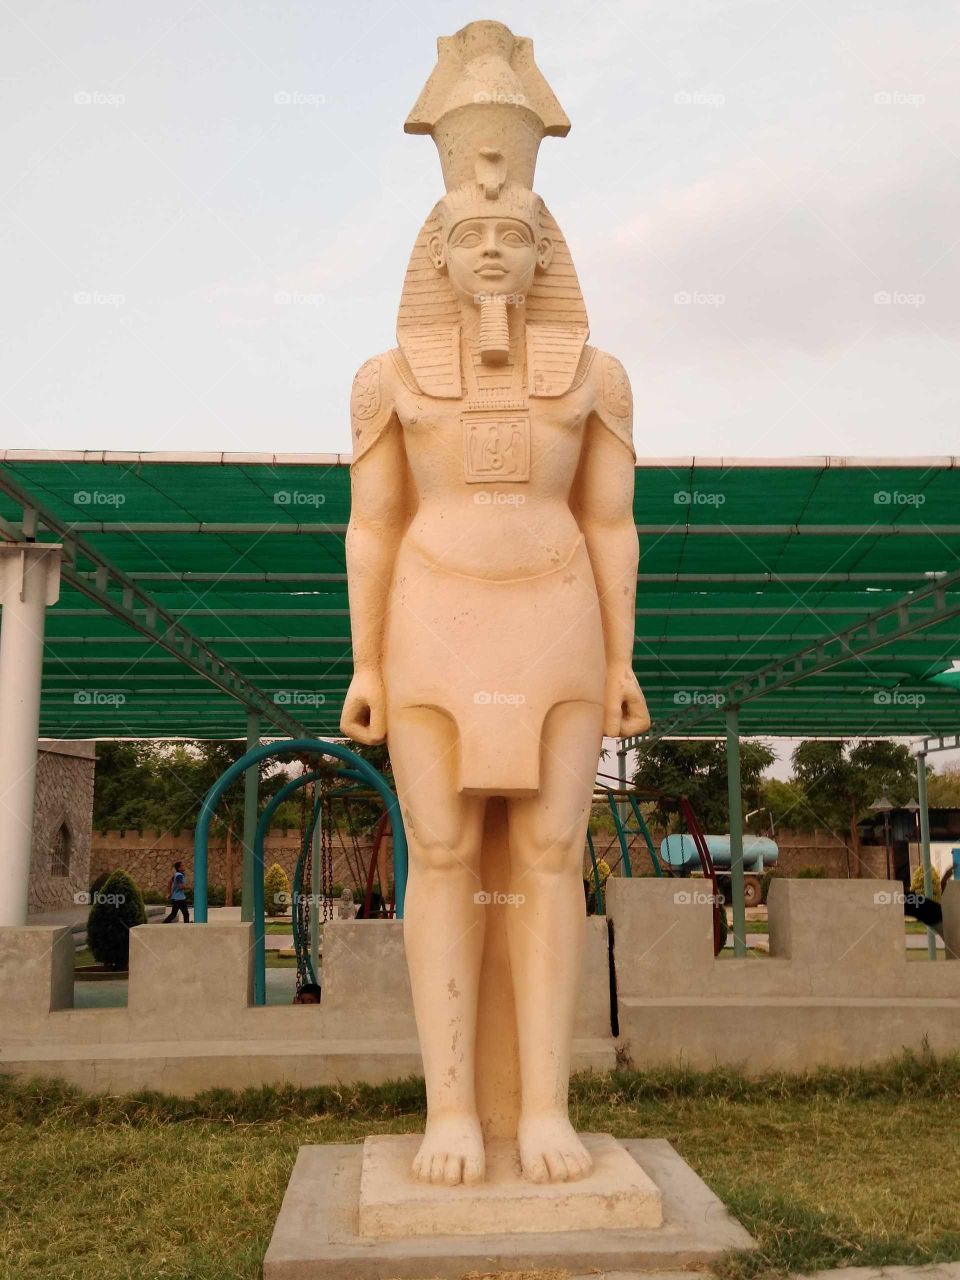 Egyptian idol